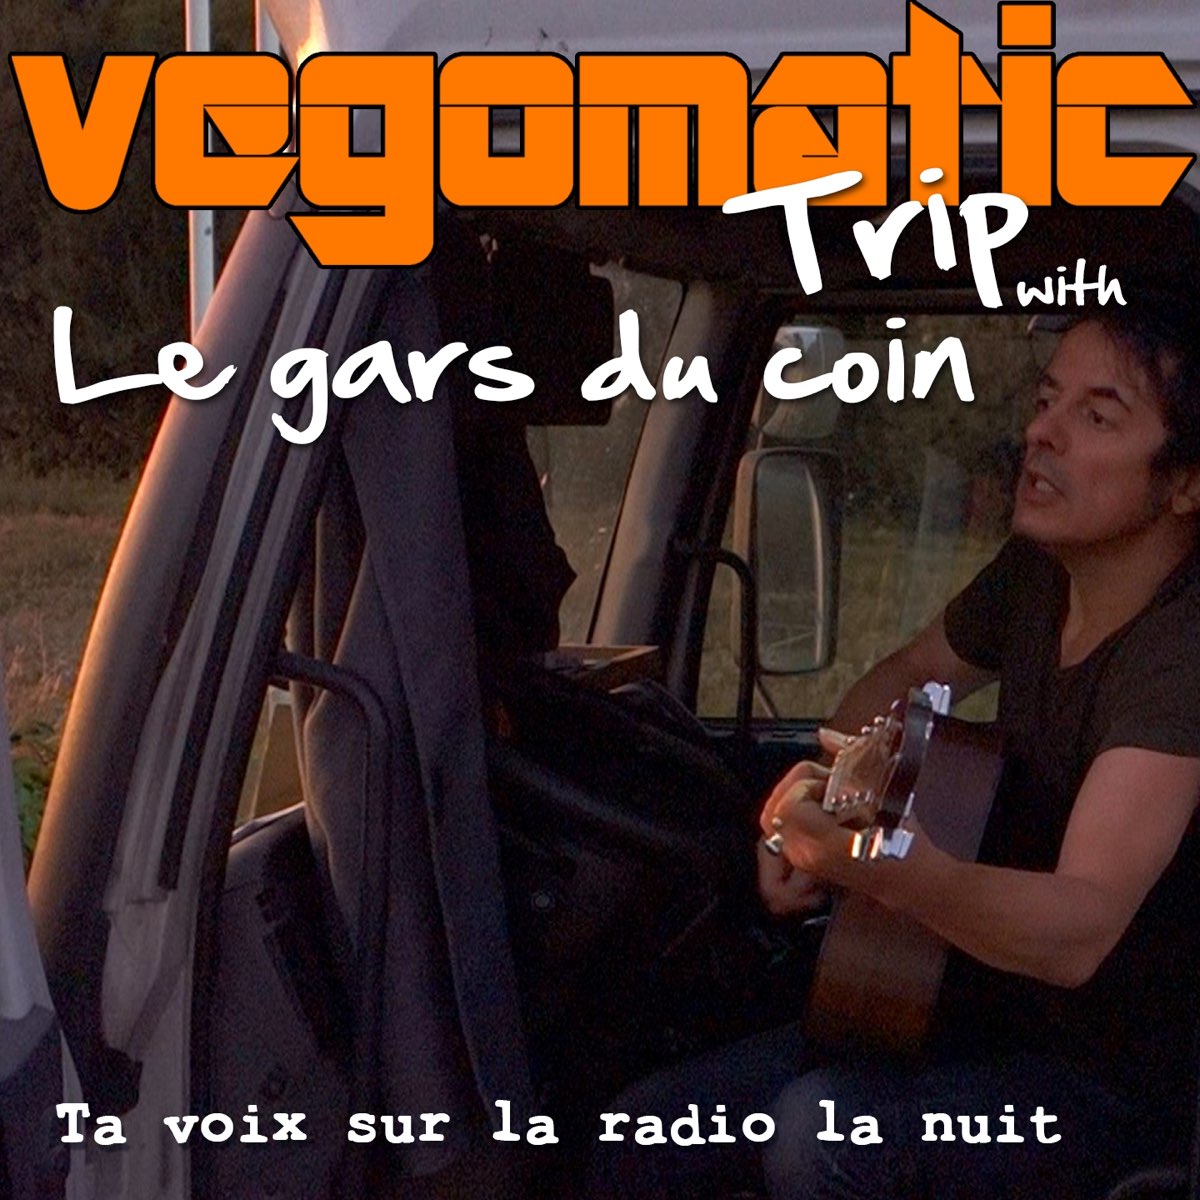 Ta voix sur la radio la nuit (feat. Le Gars du Coin) - Single de Vegomatic  en Apple Music